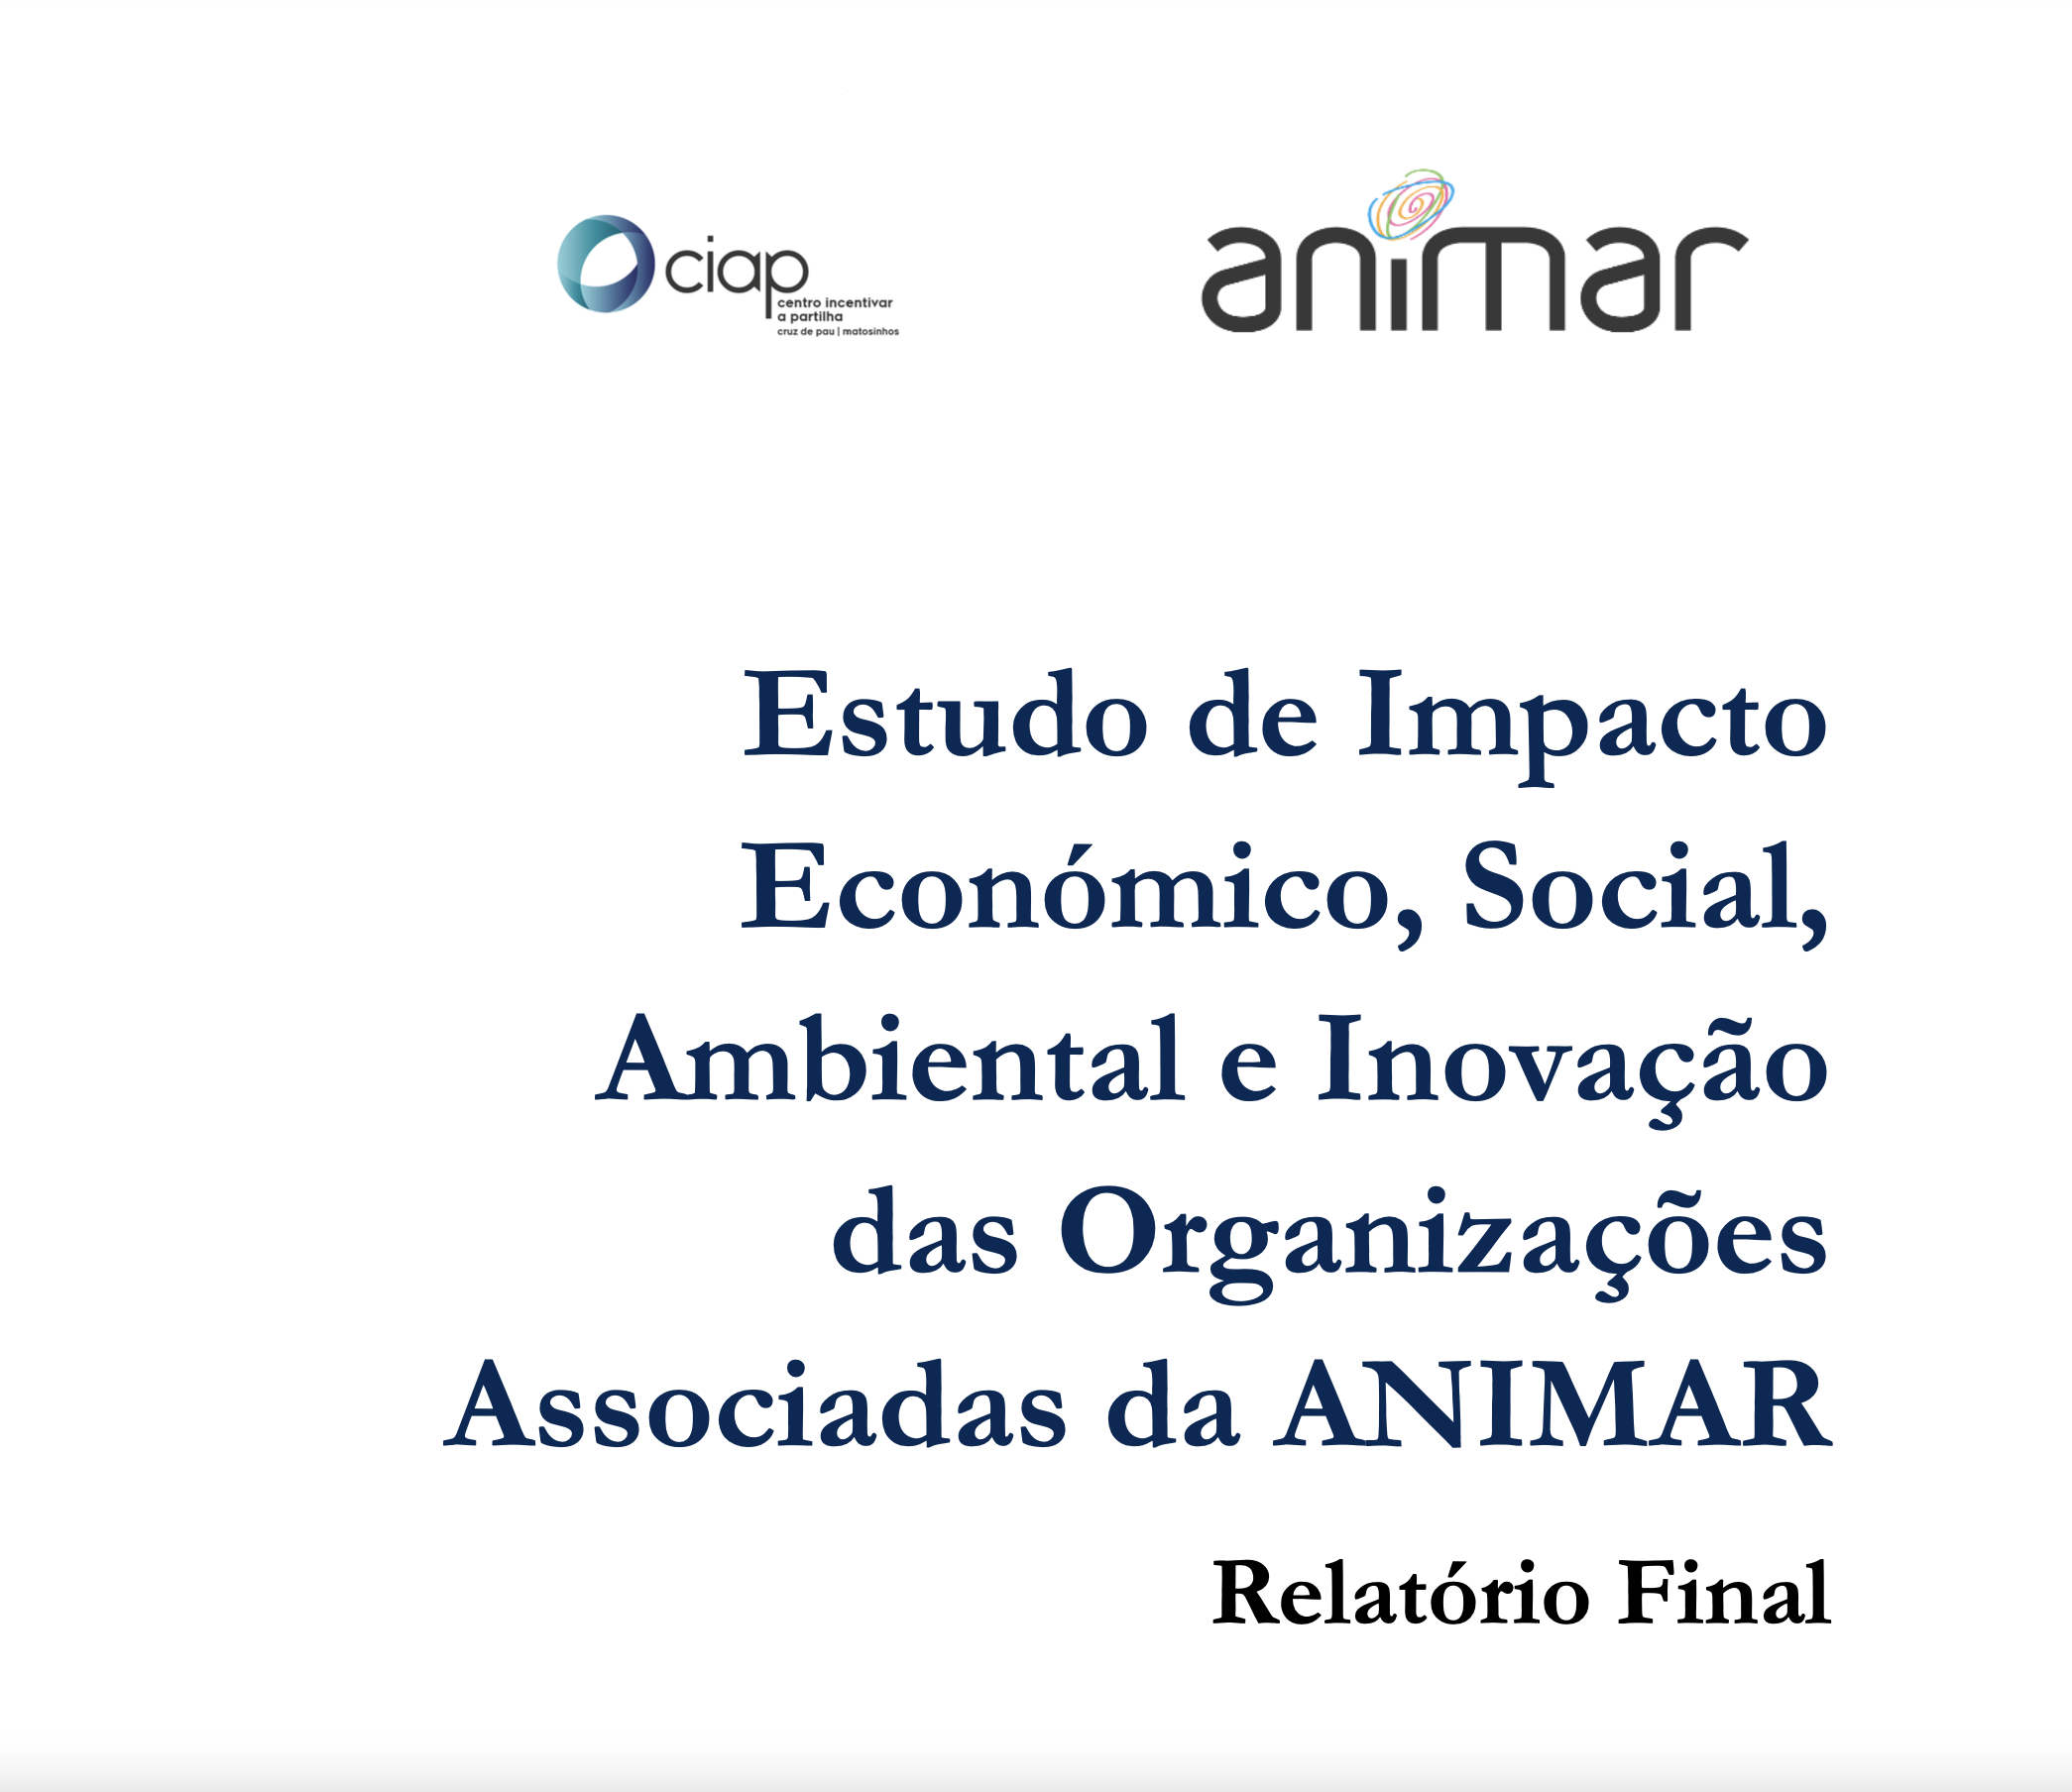 Estudo de Impacto Económico, Social, Ambiental e Inovação das Organizações Associadas da Animar